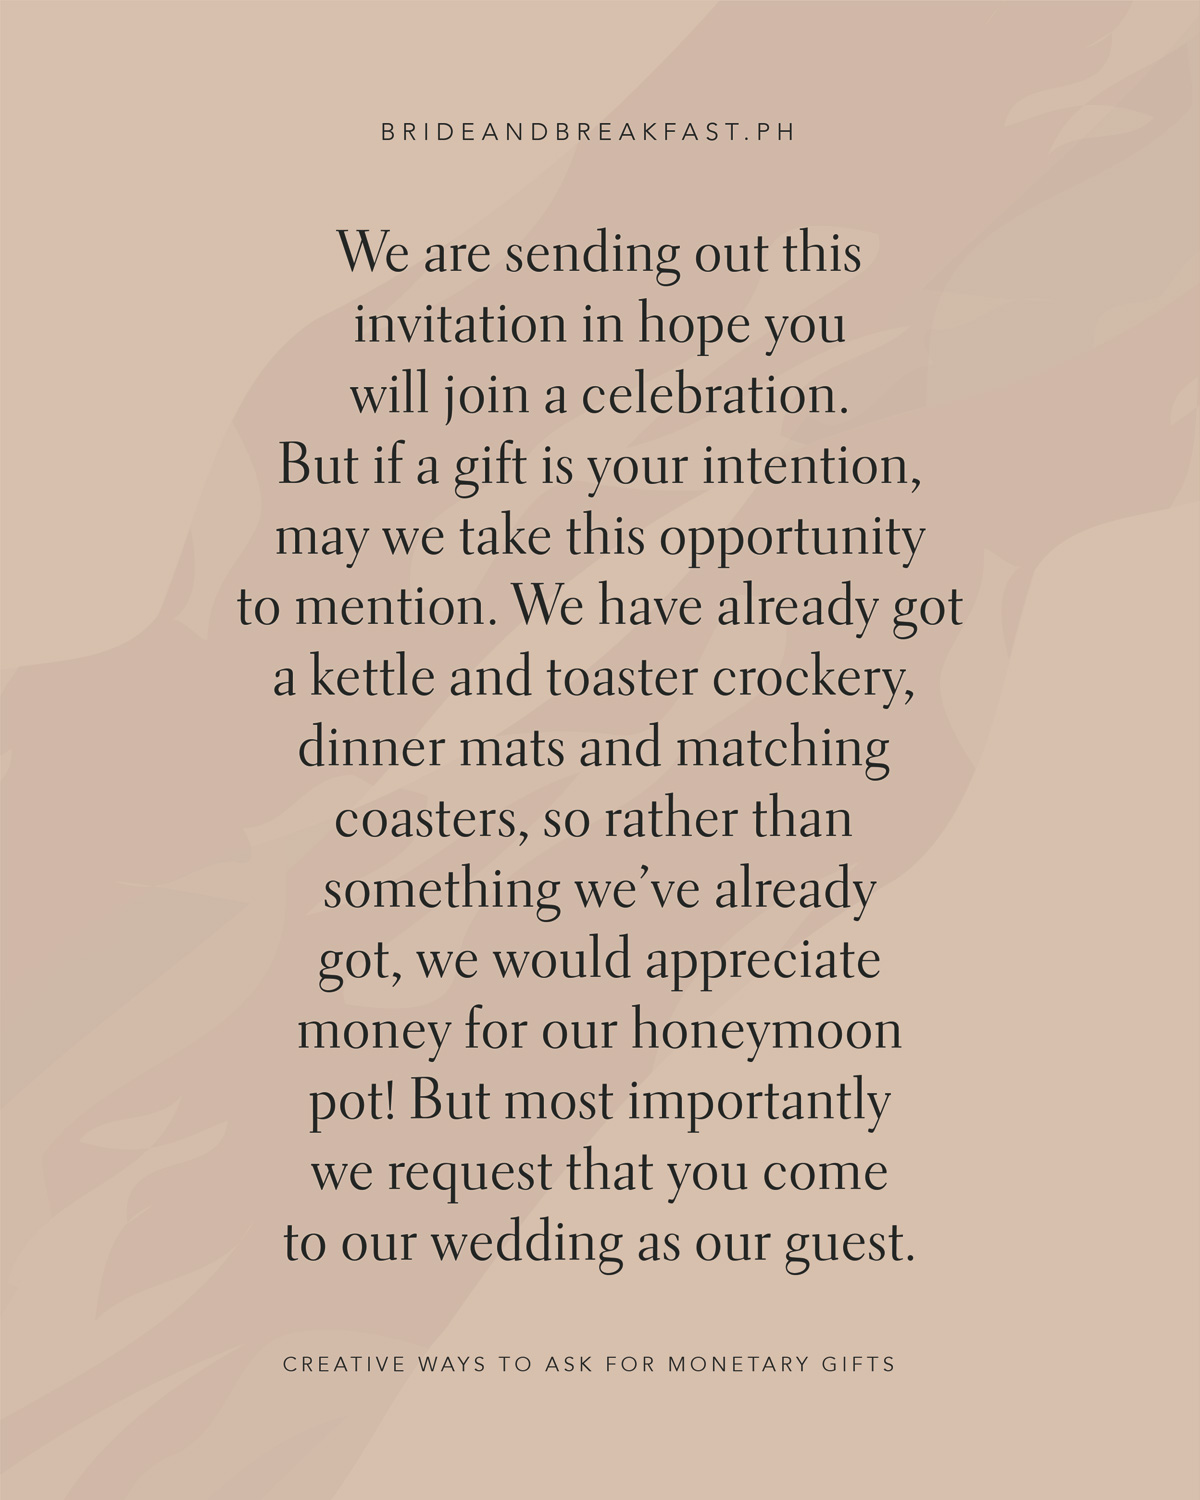  Nous envoyons cette invitation Dans l'espoir que vous vous joindrez à une célébration, Mais si un cadeau est votre intention, nous en profitons pour mentionner que Nous avons déjà une bouilloire et une vaisselle grille-pain, des tapis de dîner et des sous-verres assortis, Donc plutôt que quelque chose que nous avons déjà, Nous apprécierions de l'argent pour notre pot de lune de miel, Mais surtout nous vous demandons de venir à notre mariage en tant qu'invité.